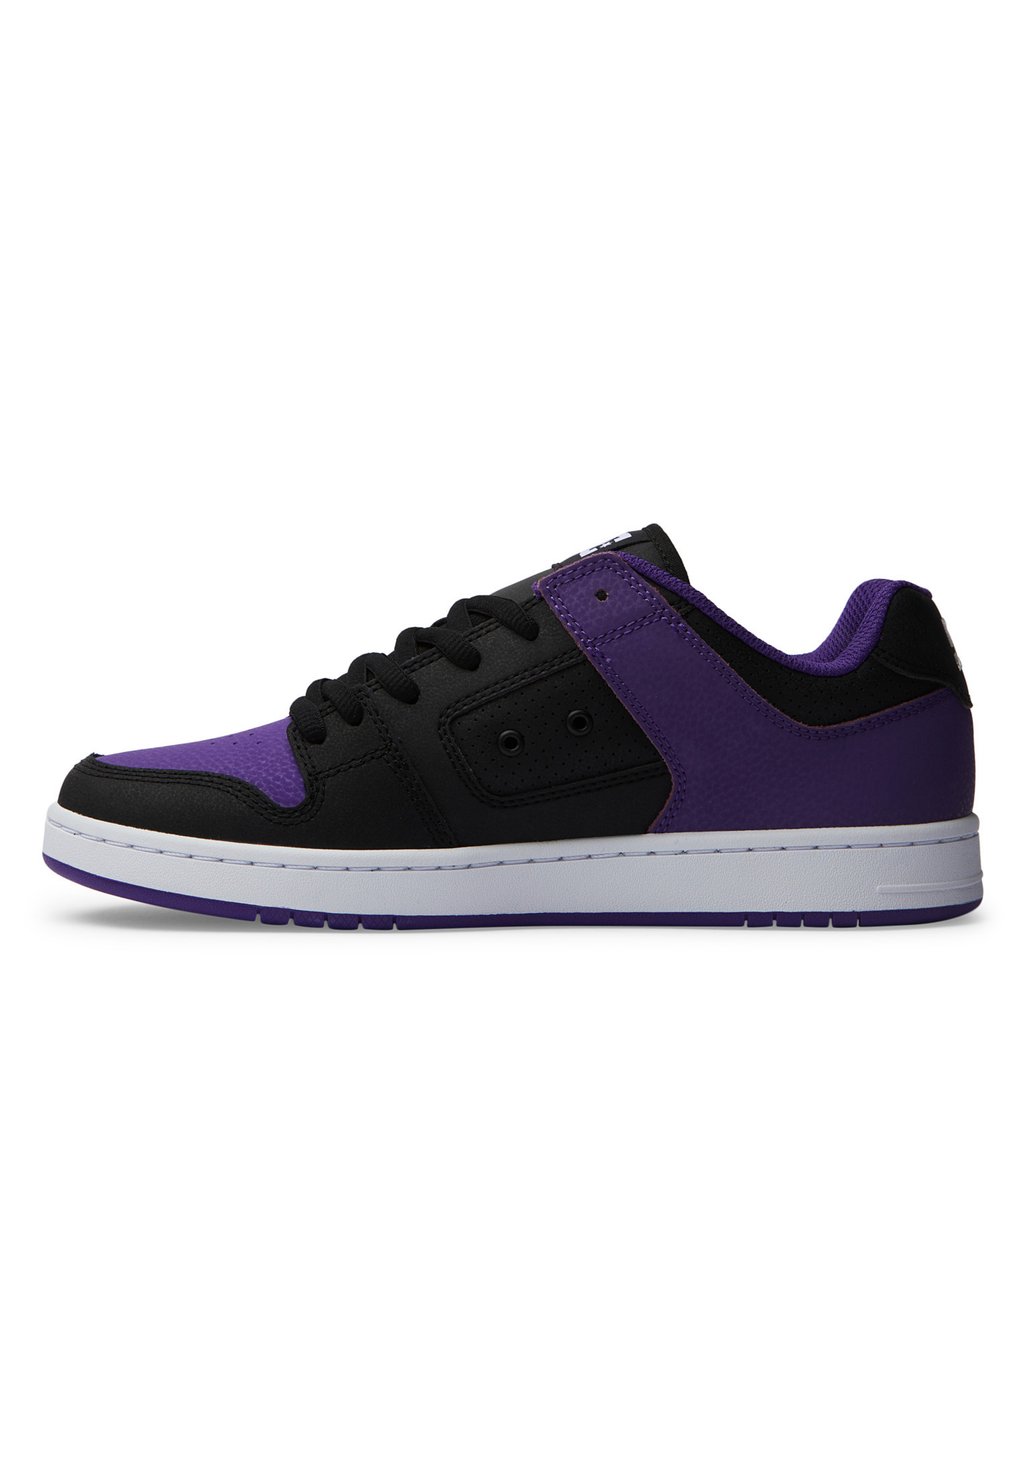 Обувь для скейтбординга MANTECA 4 DC Shoes, цвет lpo black purple orange